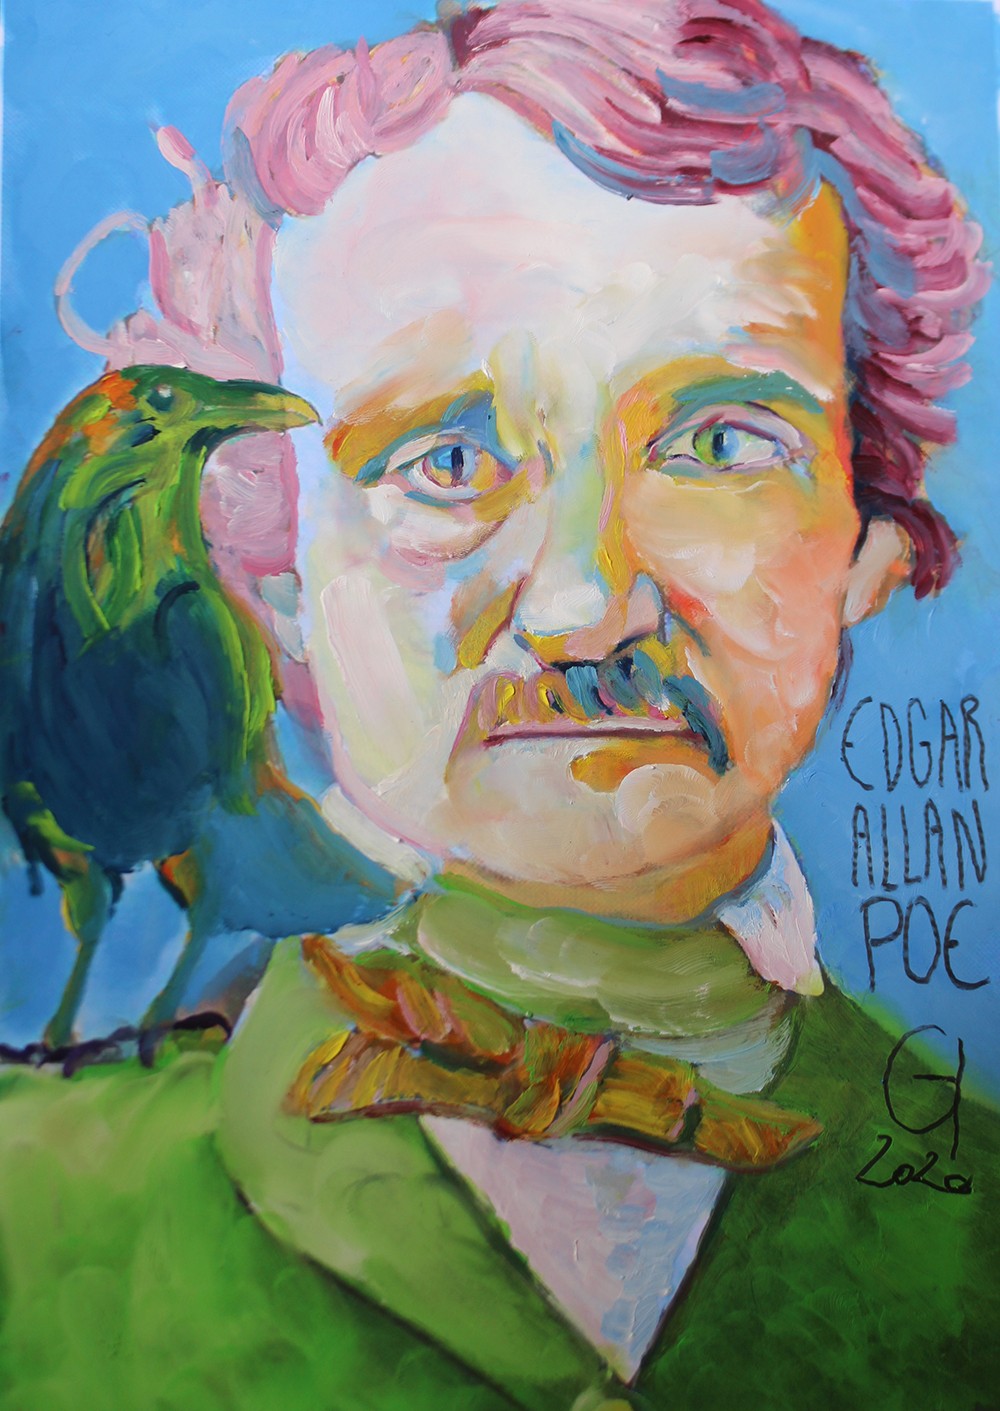 2. Edgar Allan Poe - Grégory Huck